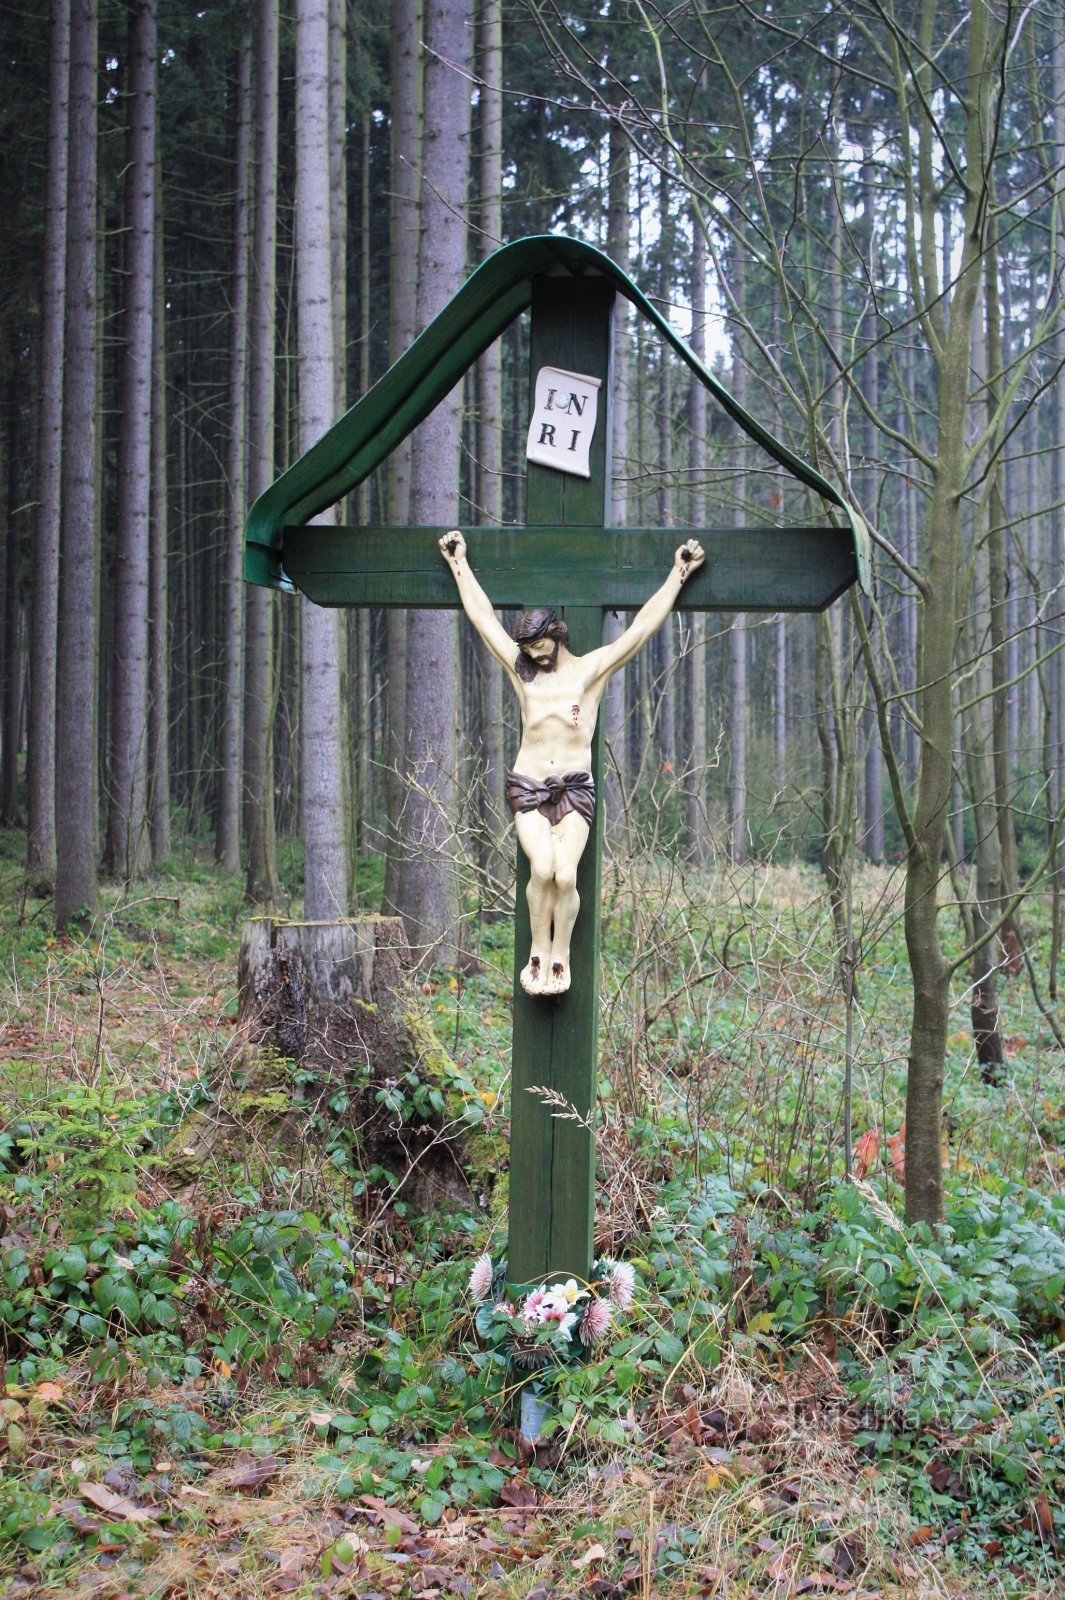 Puțin mai jos de fântână se află și o cruce de lemn